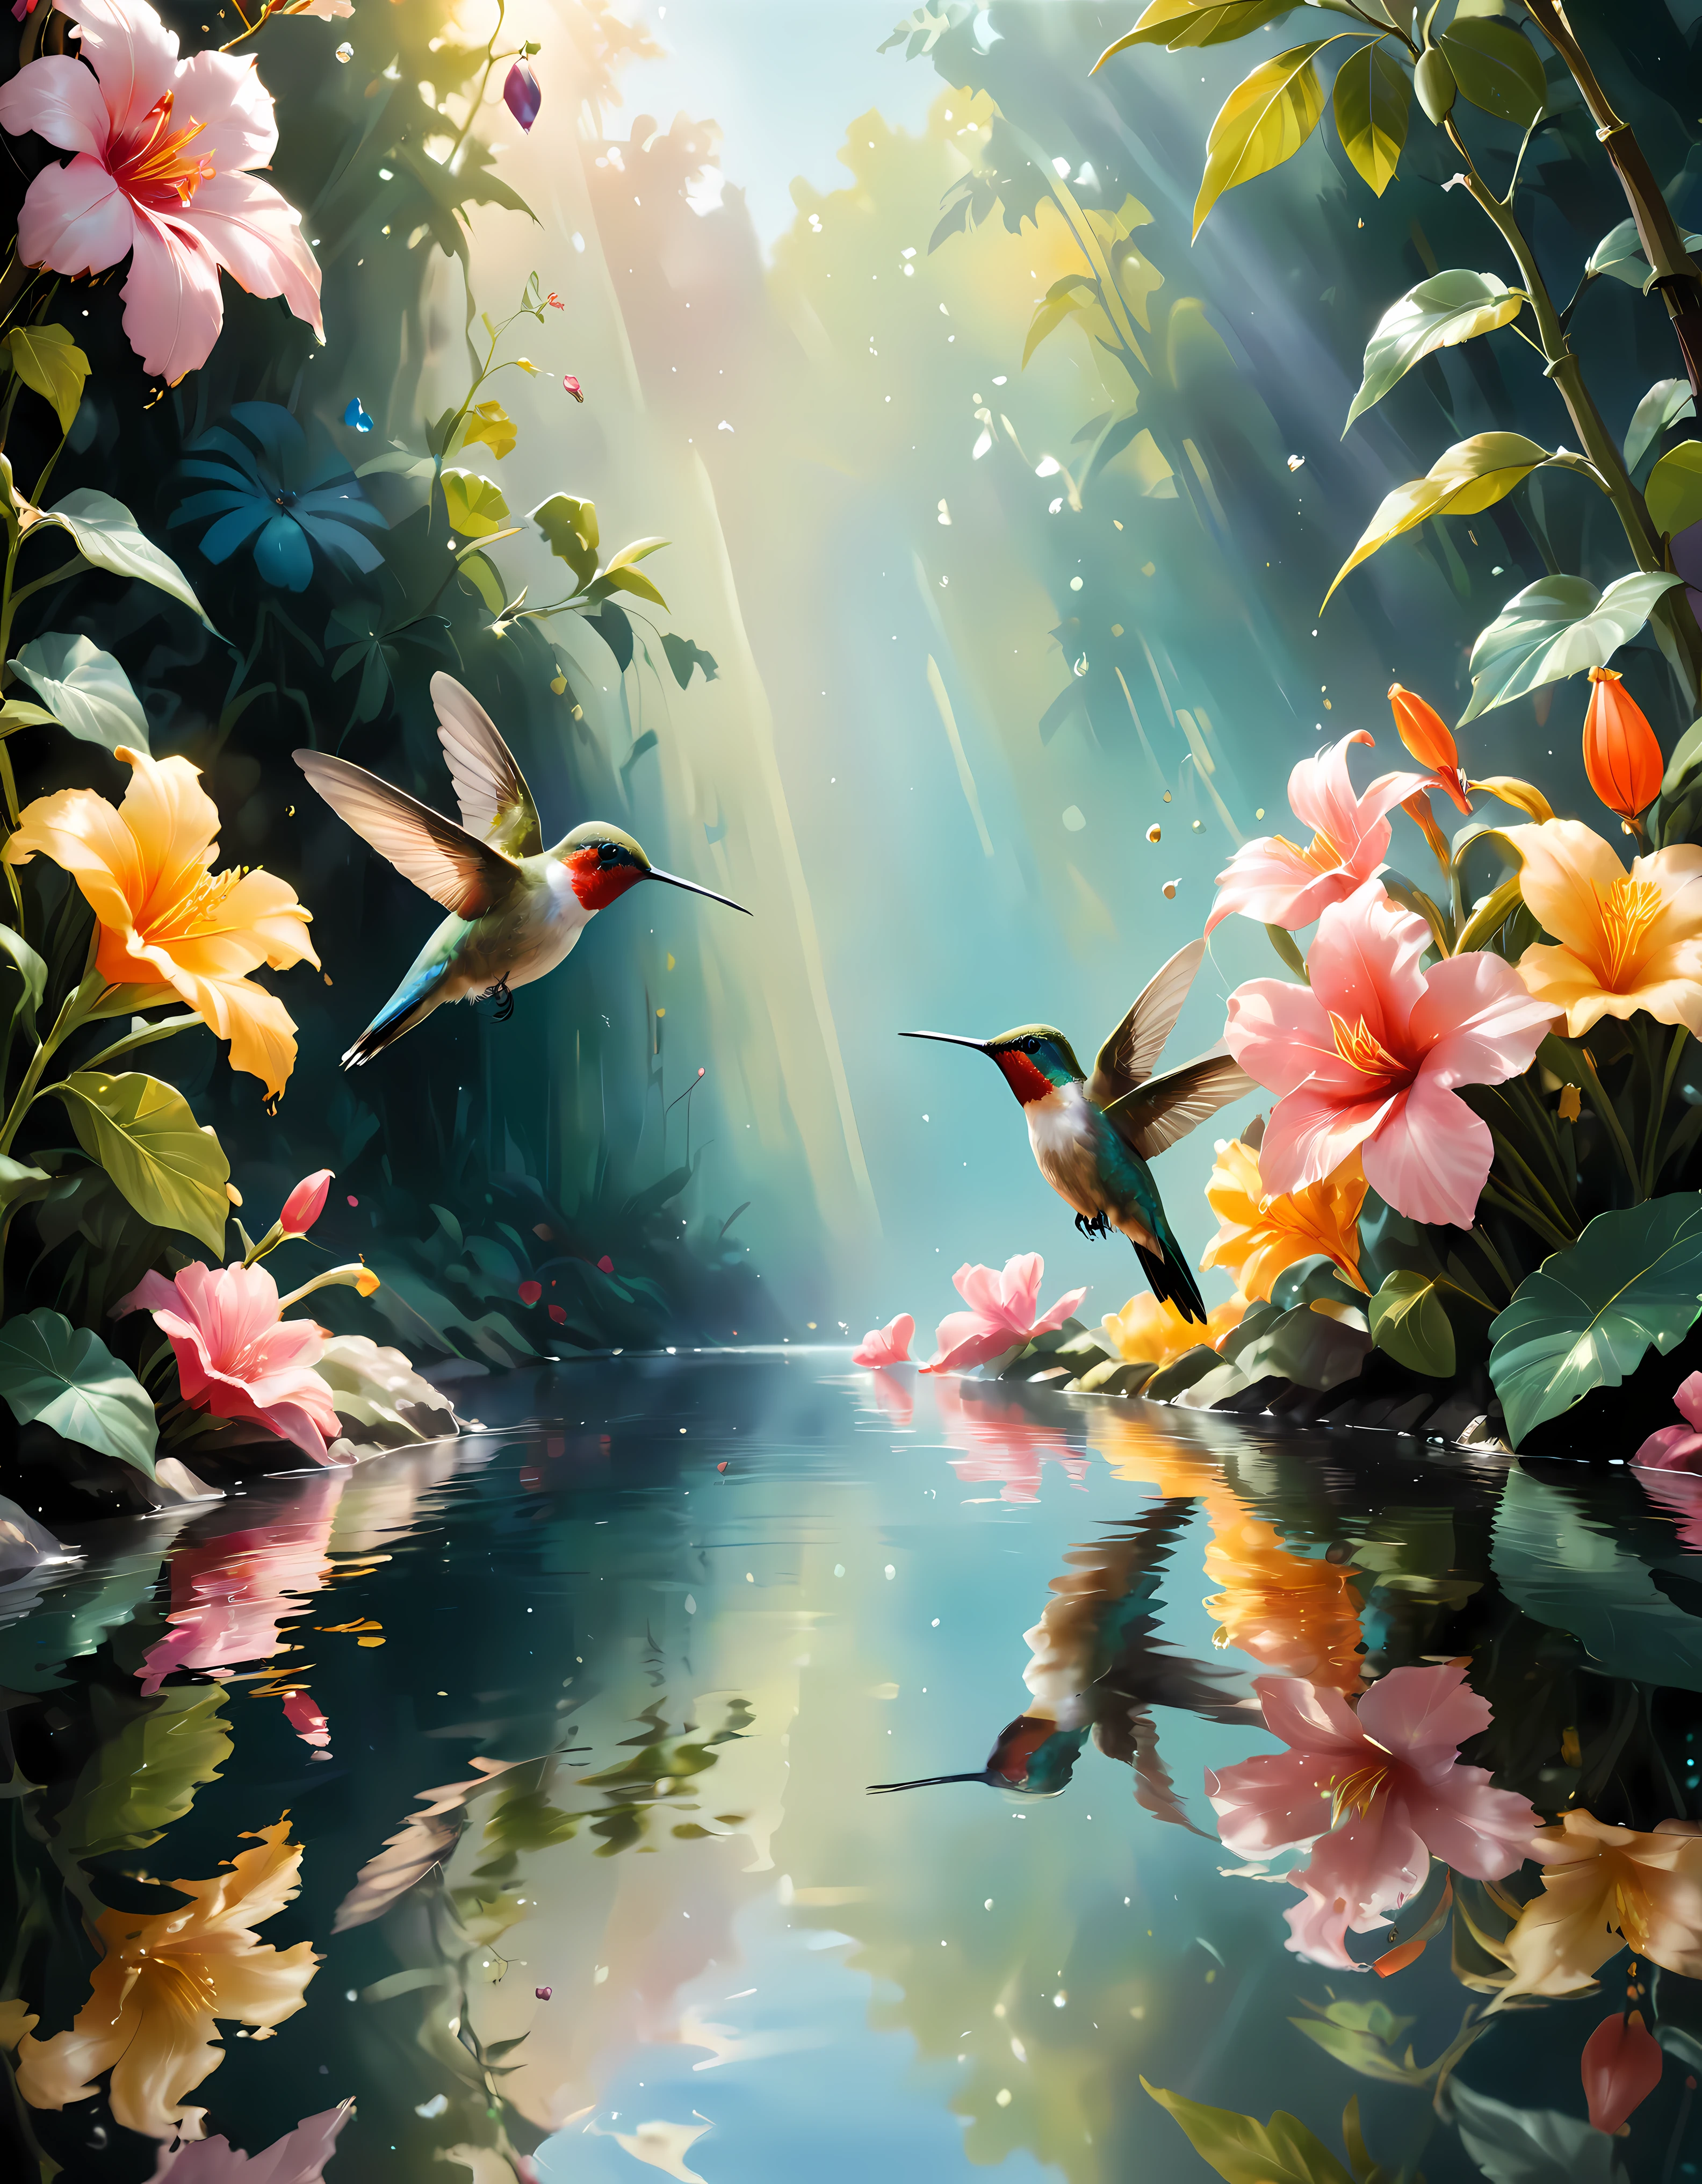 ((suave_color_cuadro:)1.5), ((suave_color_tones):1.4), ((fondo de reflexión de agua cristalina):1.3), ((suave color exotic hummingbirds):1.4)),((macro\ vista de un jardín de flores):1.2),((Imágenes fijas tipo película y ángulos dinámicos):1.3), ((silueta de sombra fresca y hermosa):1.1), Gouache con detalles intrincados, Añade un toque de realismo a esta obra maestra visualmente detallada y estilísticamente diversa.,  Se han mejorado las pinceladas detalladas., Una cuidadosa pincelada crea una atmósfera., Utilice técnicas de pincelada delicadas pero potentes., Crea una atmósfera encantadora. gouache muy detallado, ((Nitidez y claridad incomparables):1.1), ((Radiosidad renderizada en una sorprendente resolución de 32K):1.3), Todo capturado con un enfoque nítido.